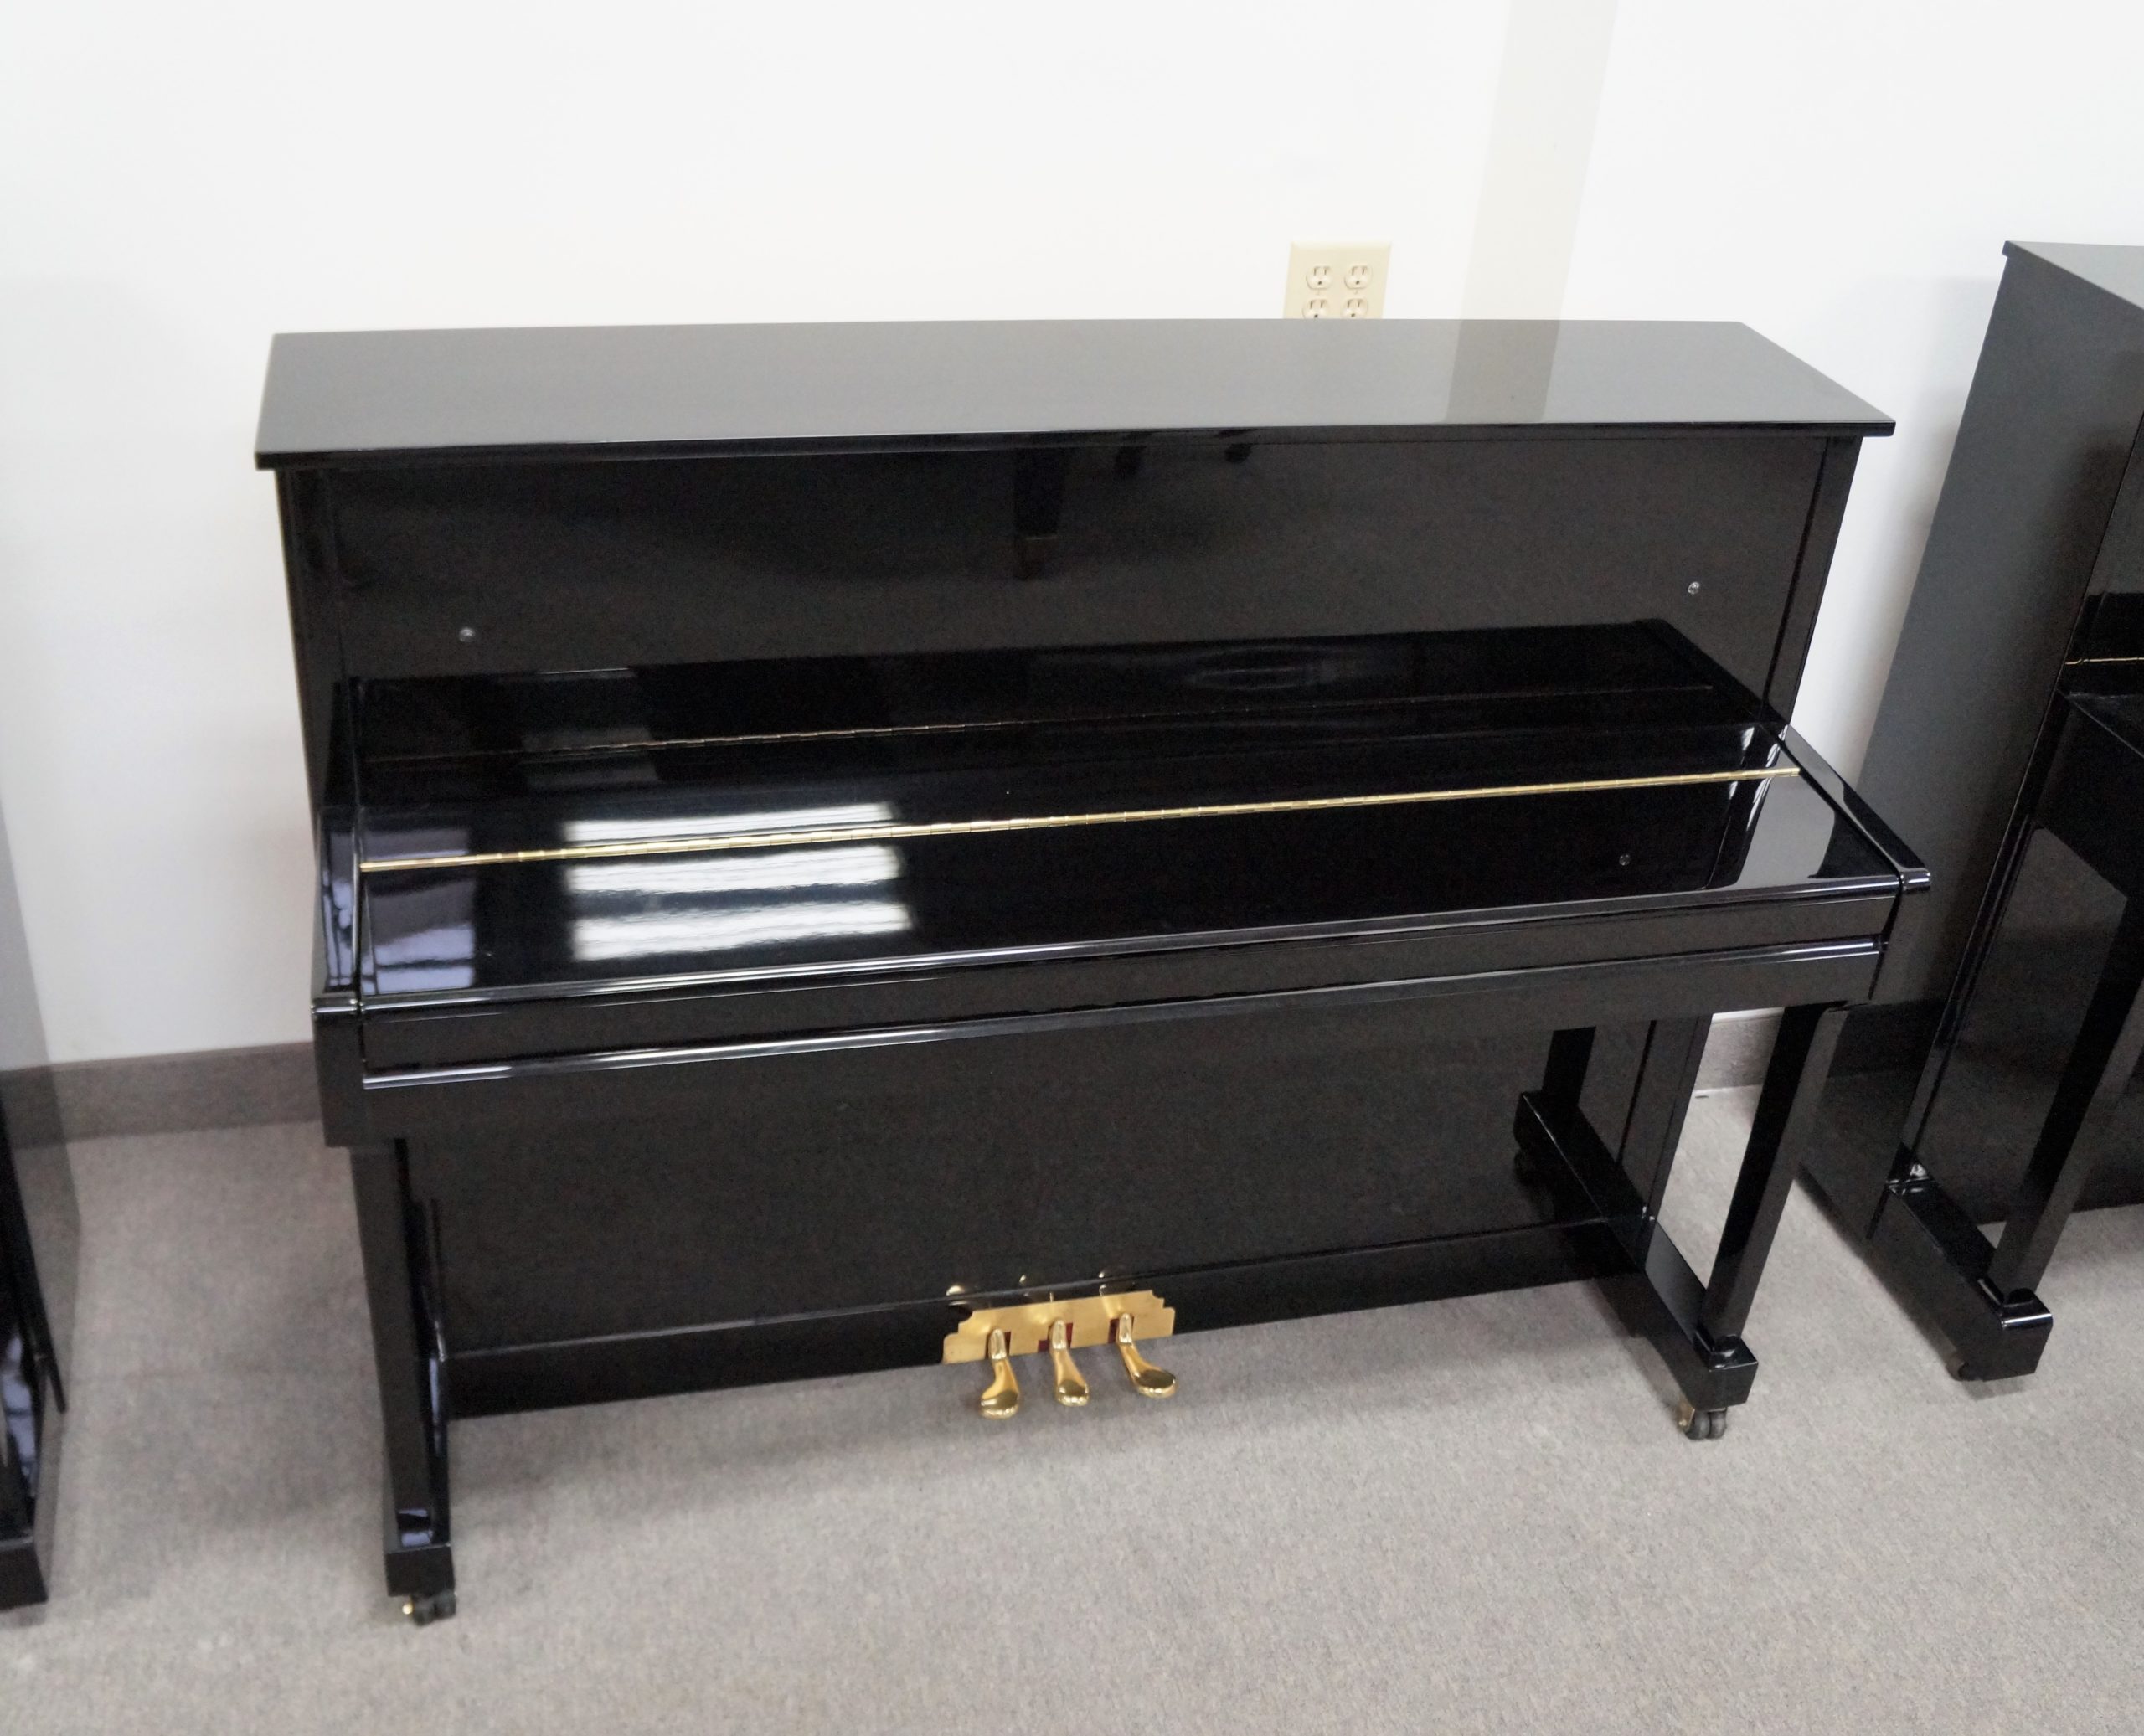 Cristofori Professional Upright Piano